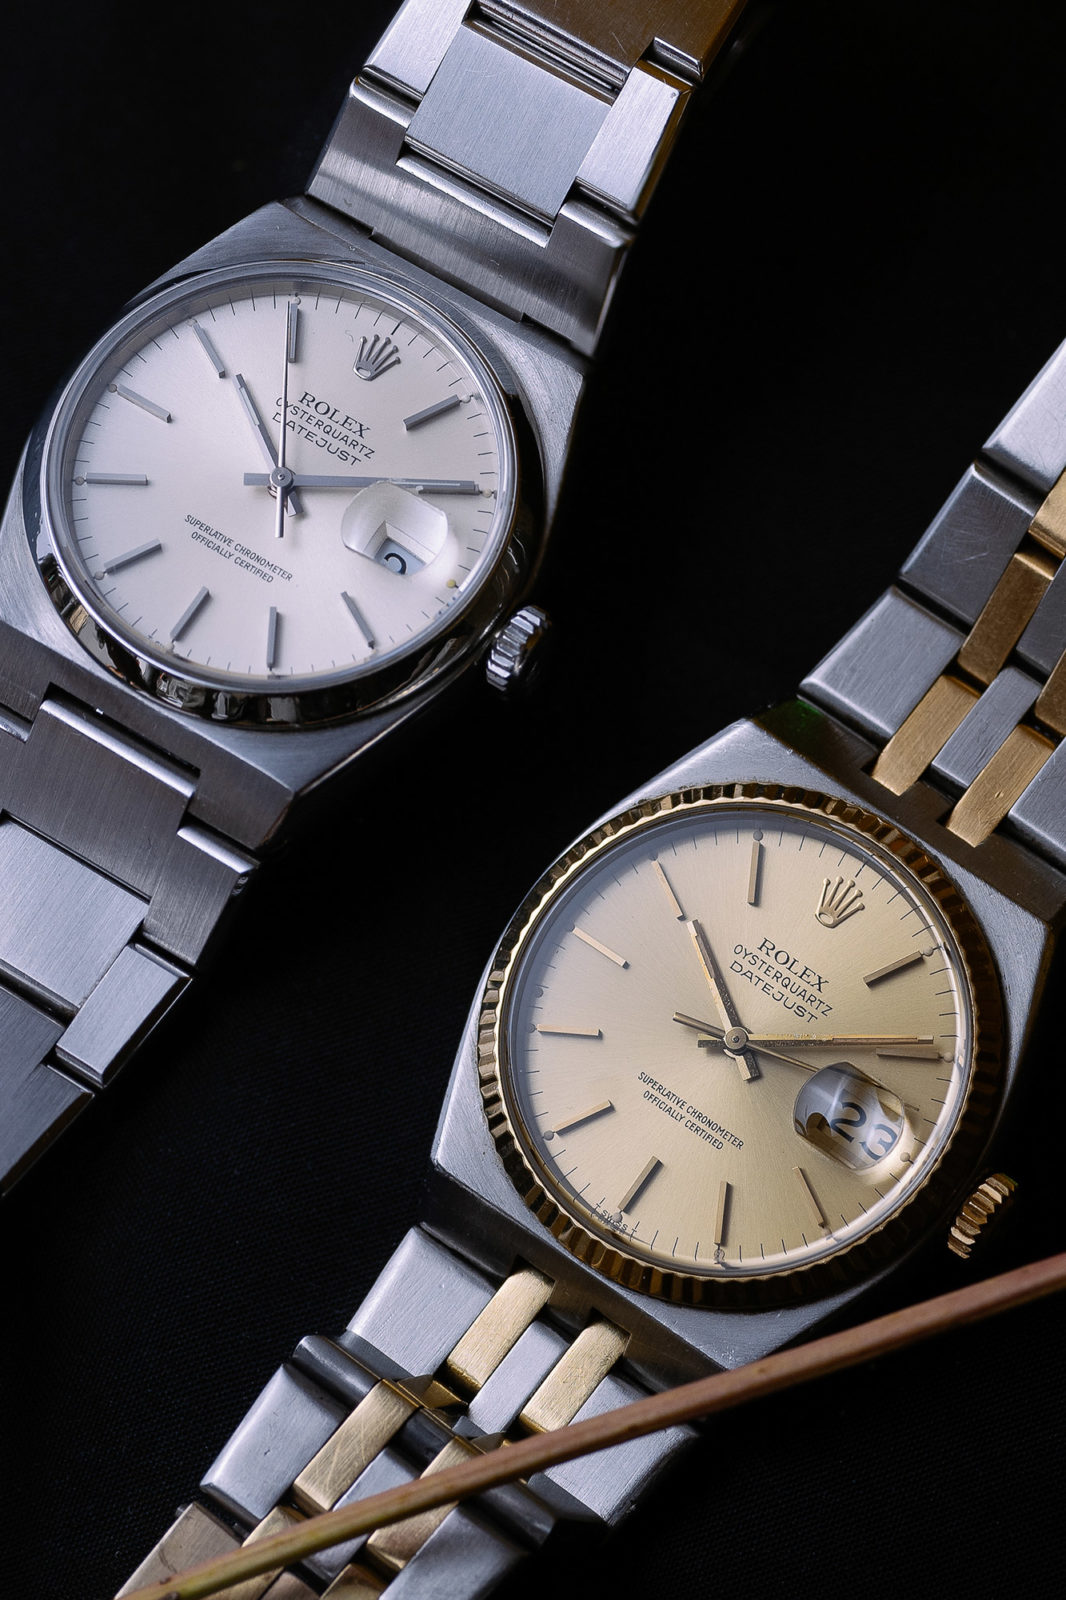 Rolex Oysterquartz - Aguttes vente de montres de collection du jeudi 10 décembre